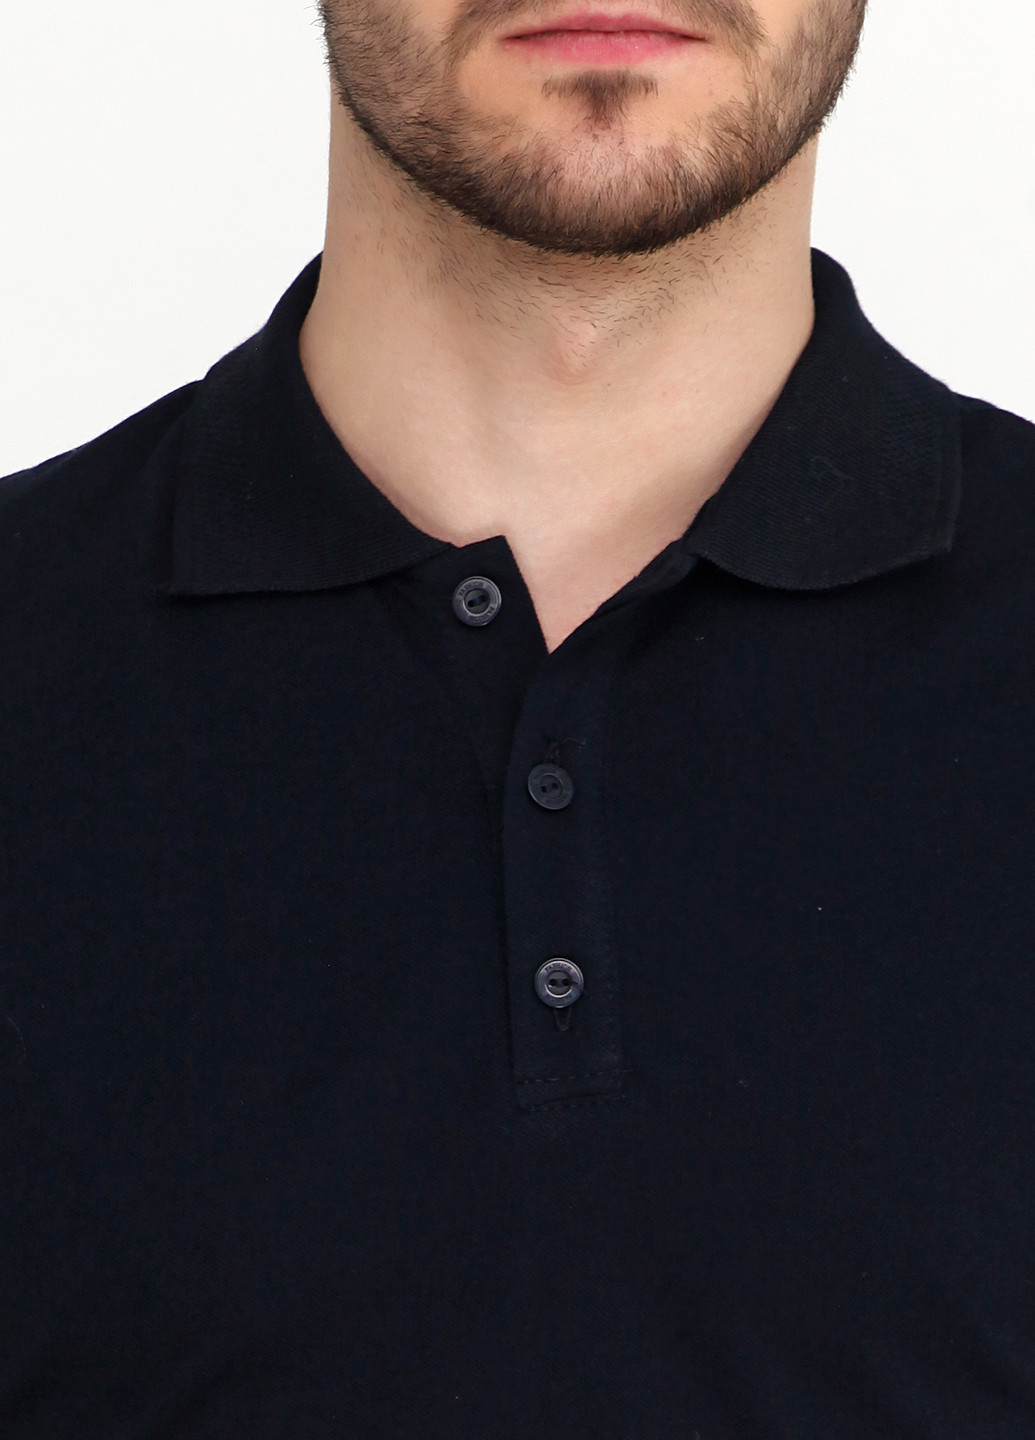 Черная футболка-поло для мужчин EL & LION однотонная